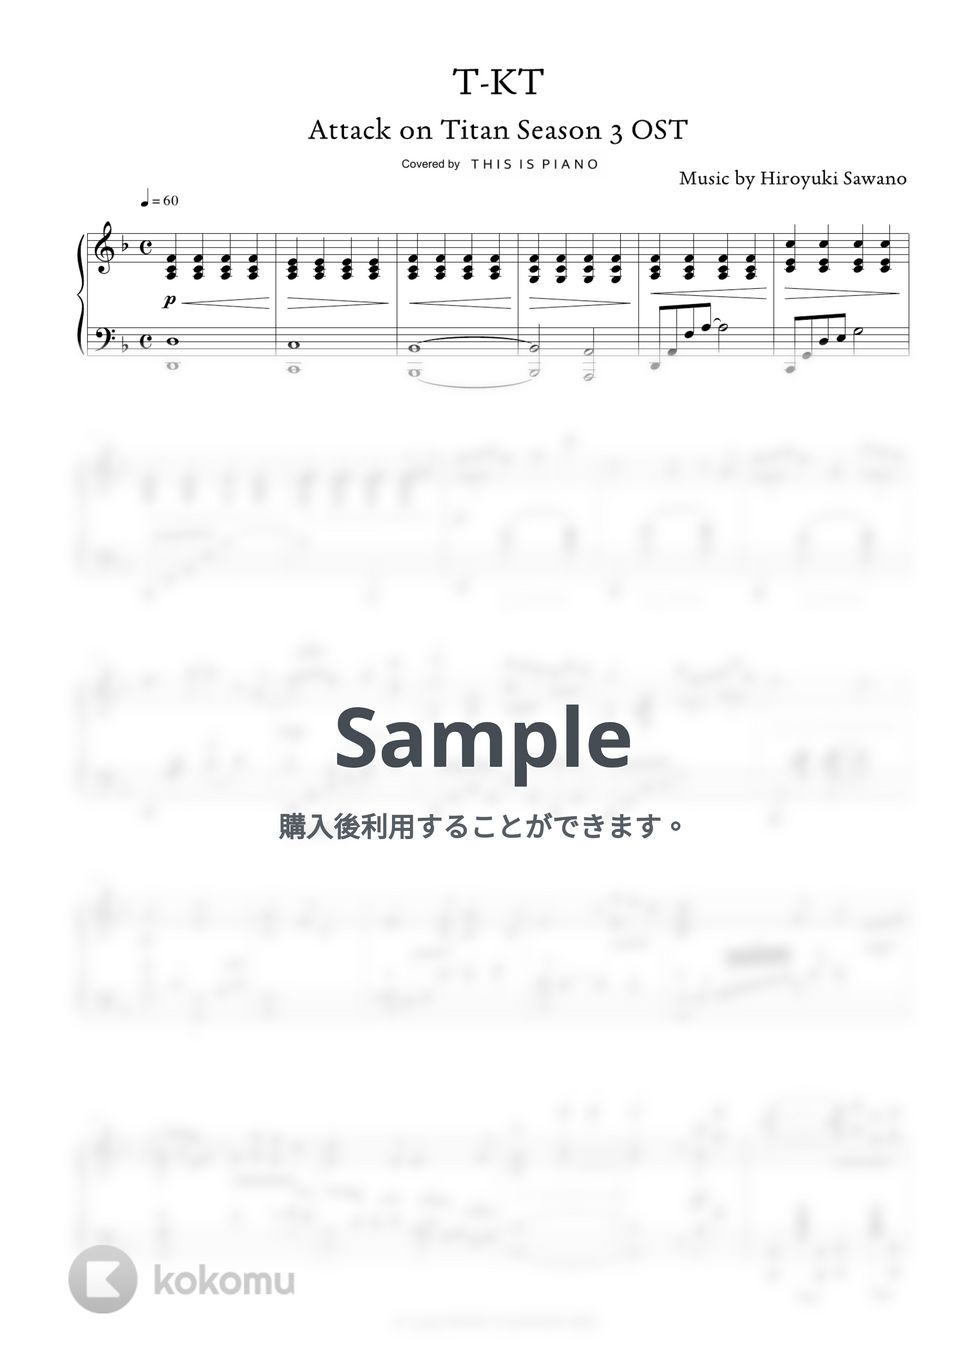 澤野 弘之 - T-KT (進撃の巨人 Season 3 OST) by THIS IS PIANO